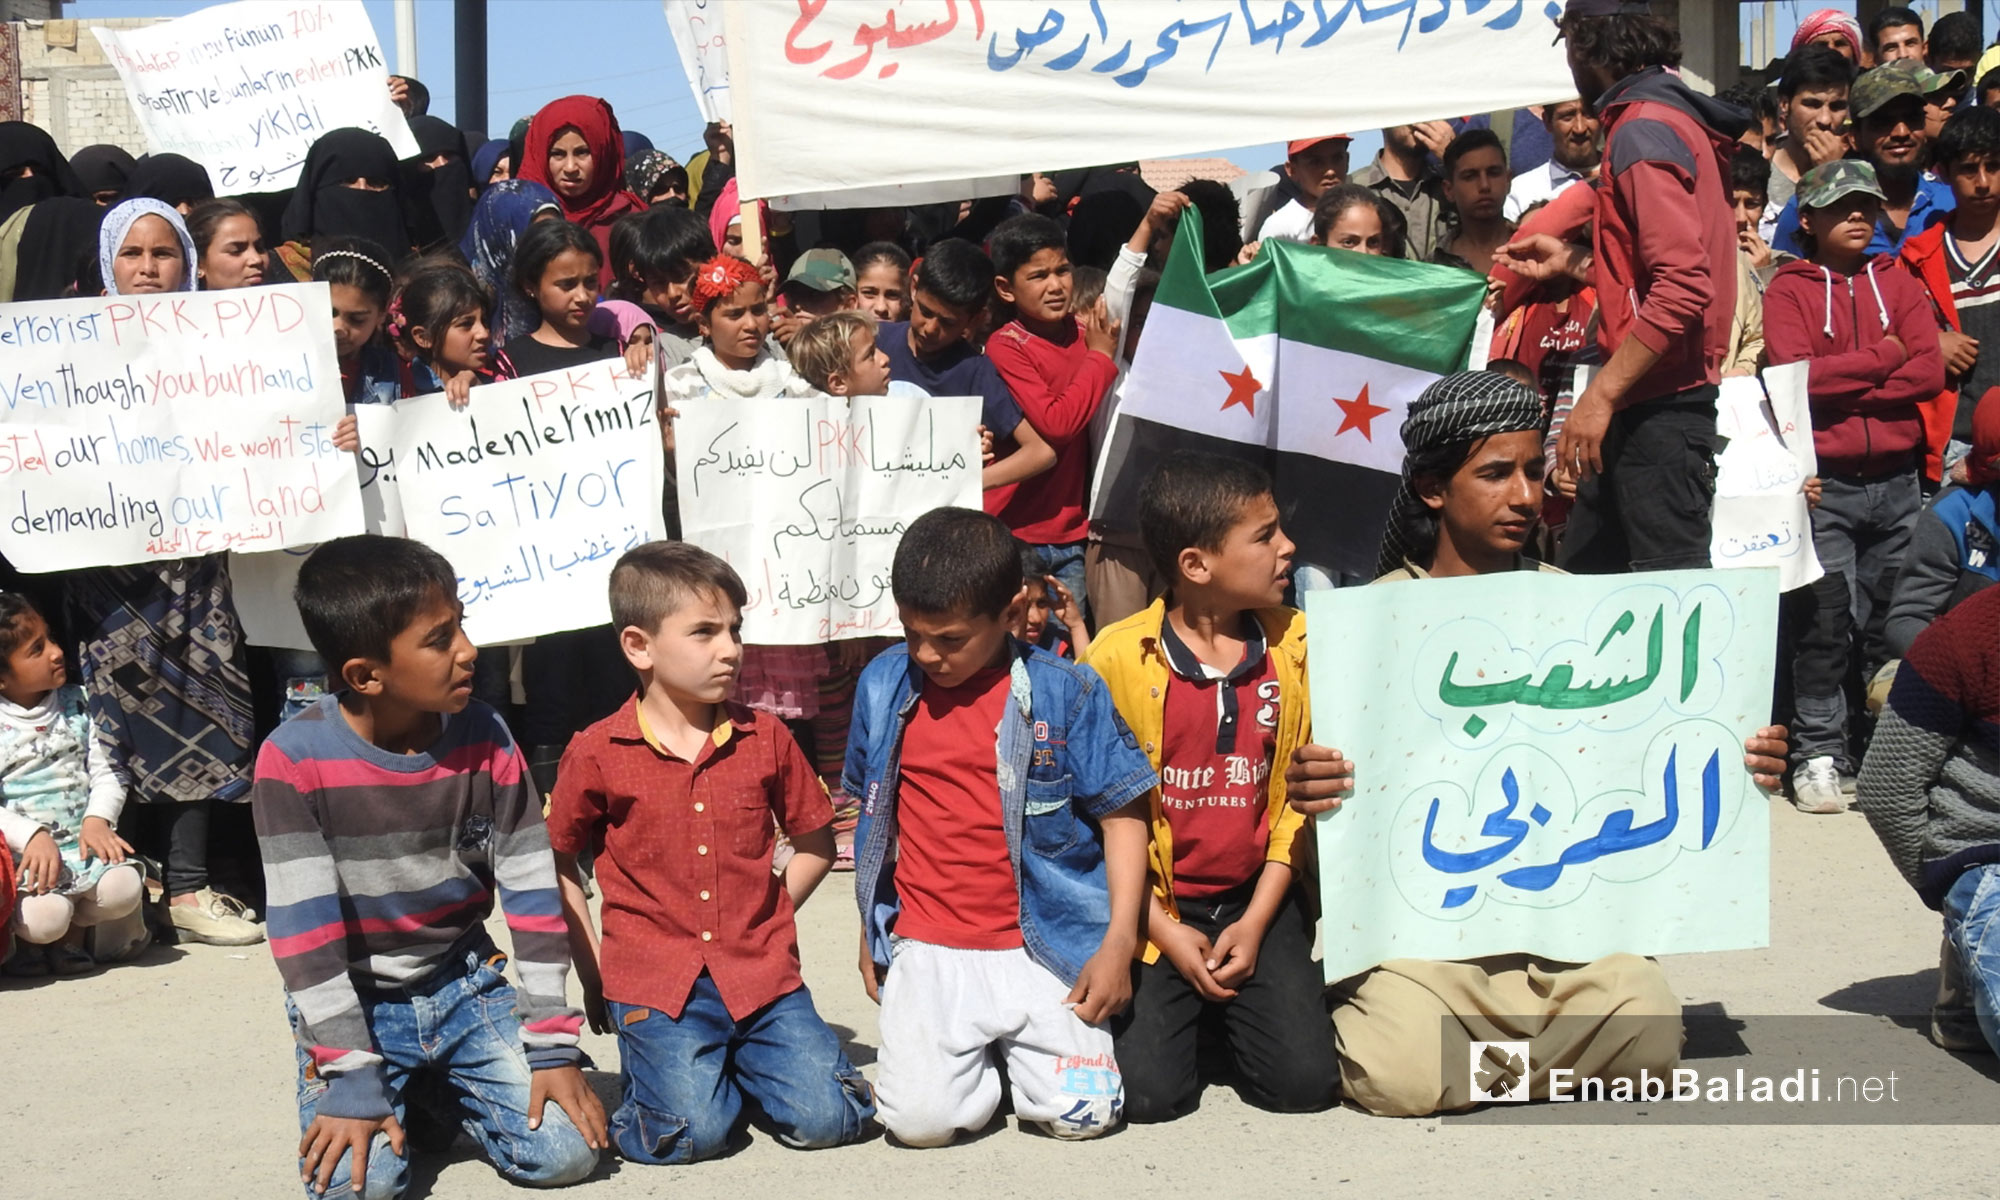 أطفال ومتظاهرون يرفعون لافتات خلال مظاهرات في جرابلس التحرك نحو شرق الفرات - 6 من نيسان 2018 (عنب بلدي)